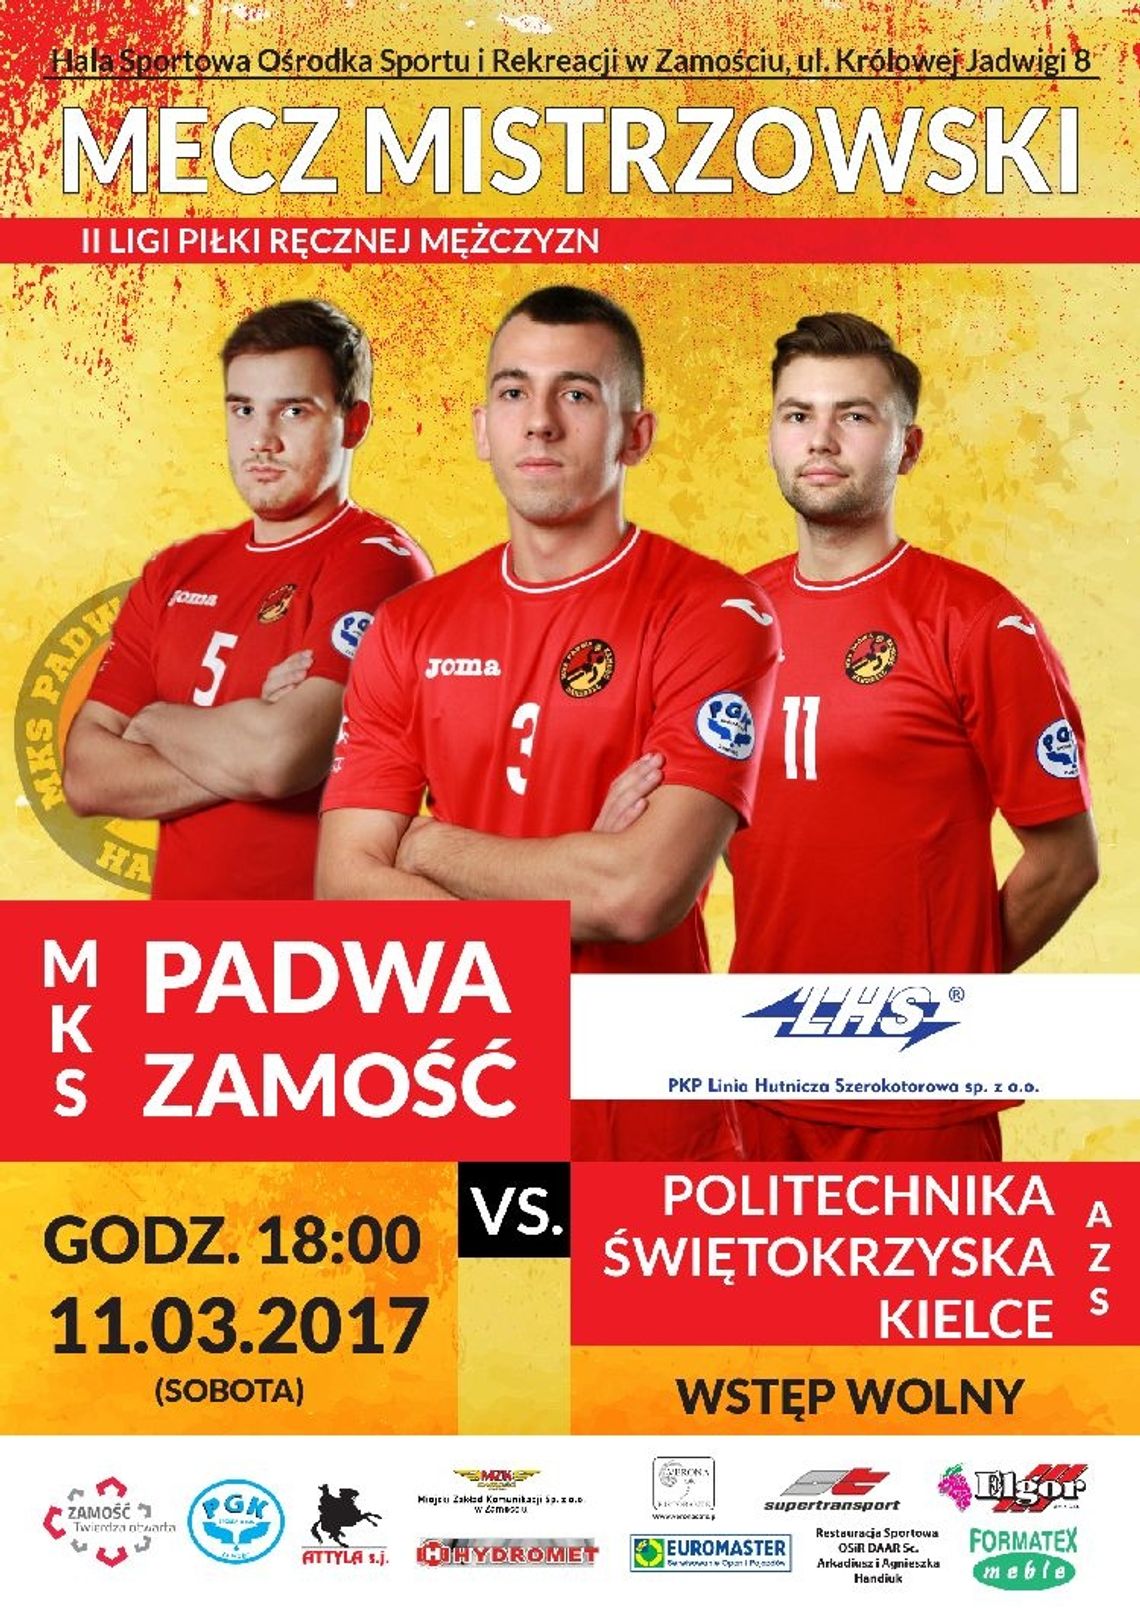 Padwa Zamość - Politechnika Kielce